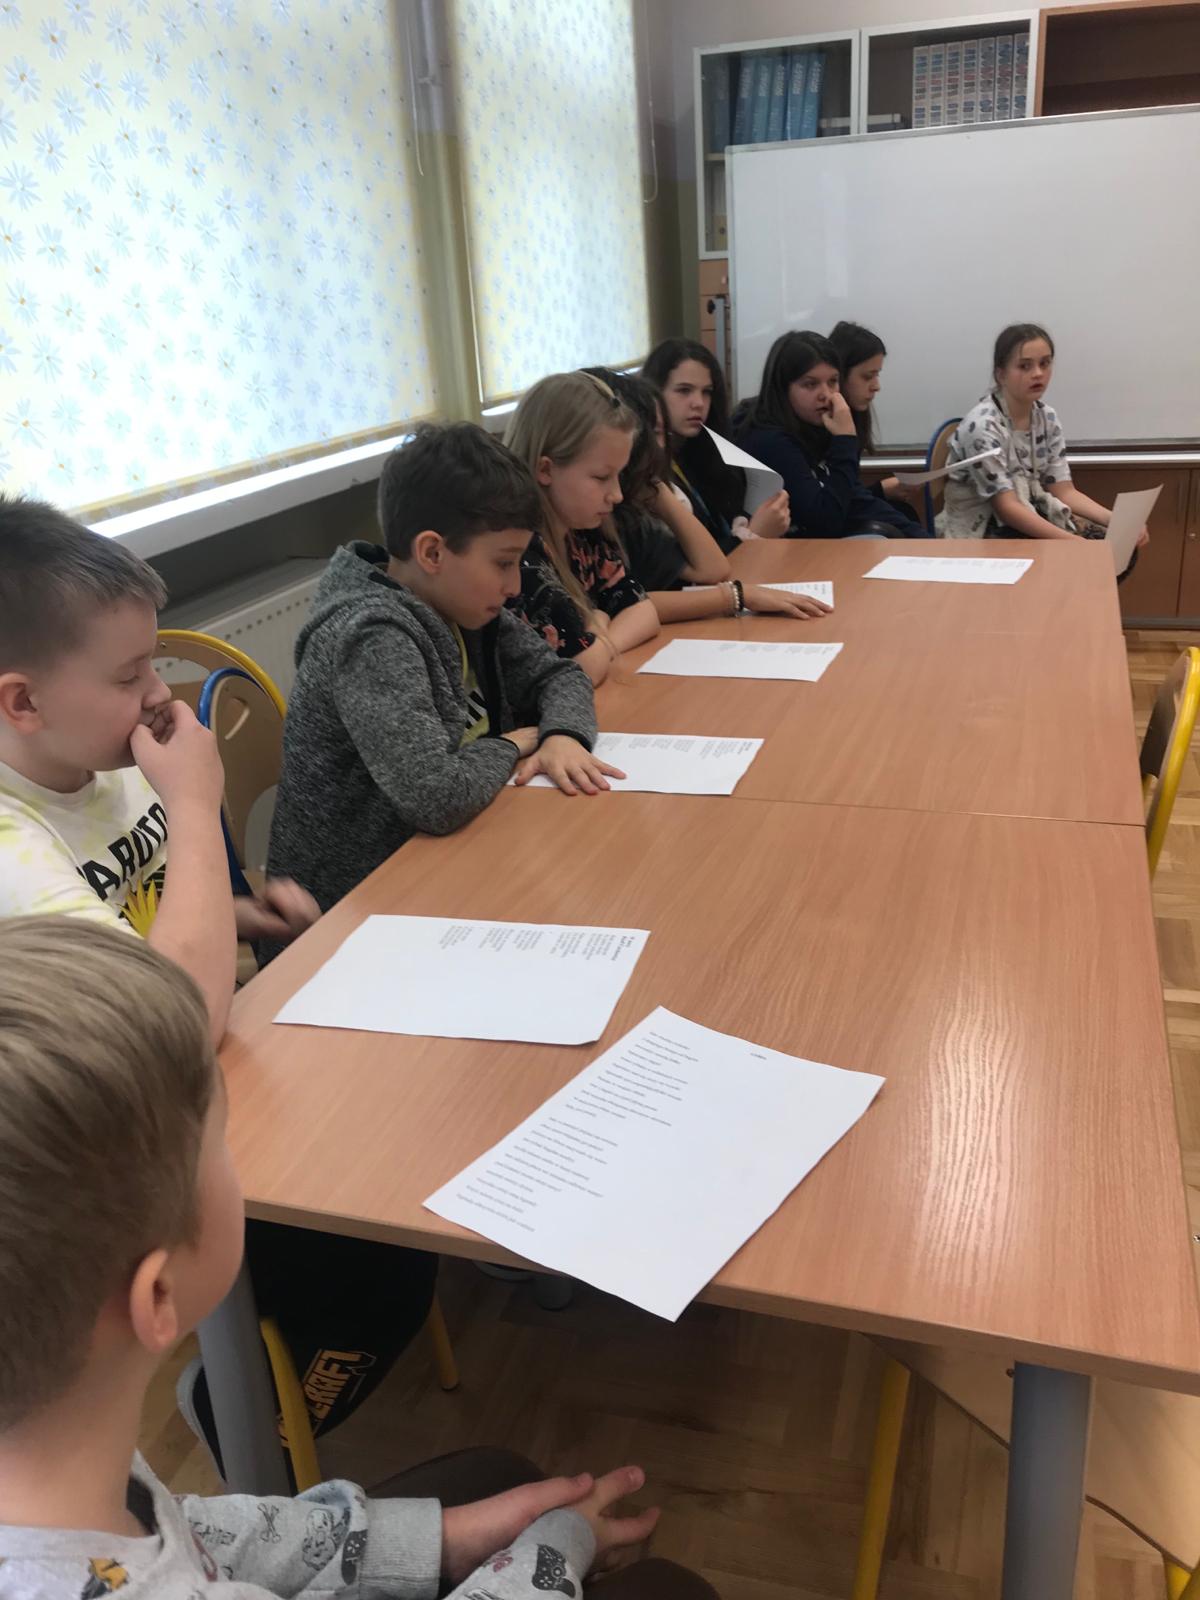 Uczniowie siedzący za stołem czytają poezję Czechowicza.